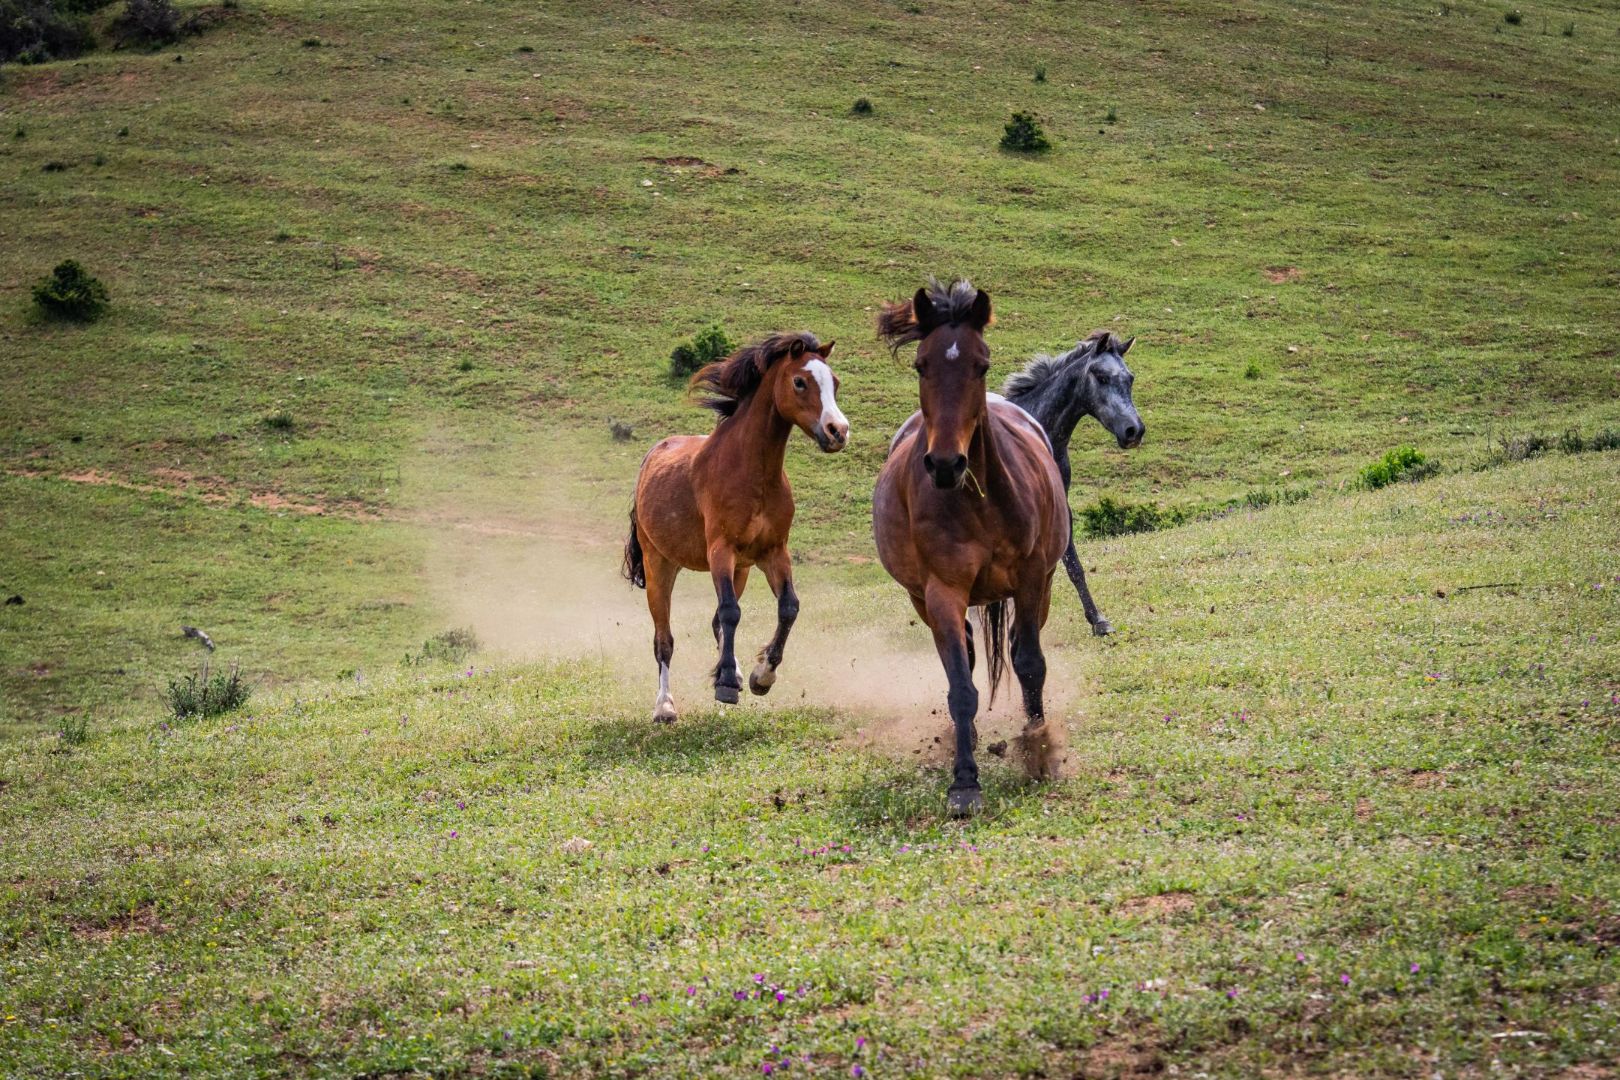 U Santu Pultru, ranch équestre & balades à cheval dans le Sud de la Corse